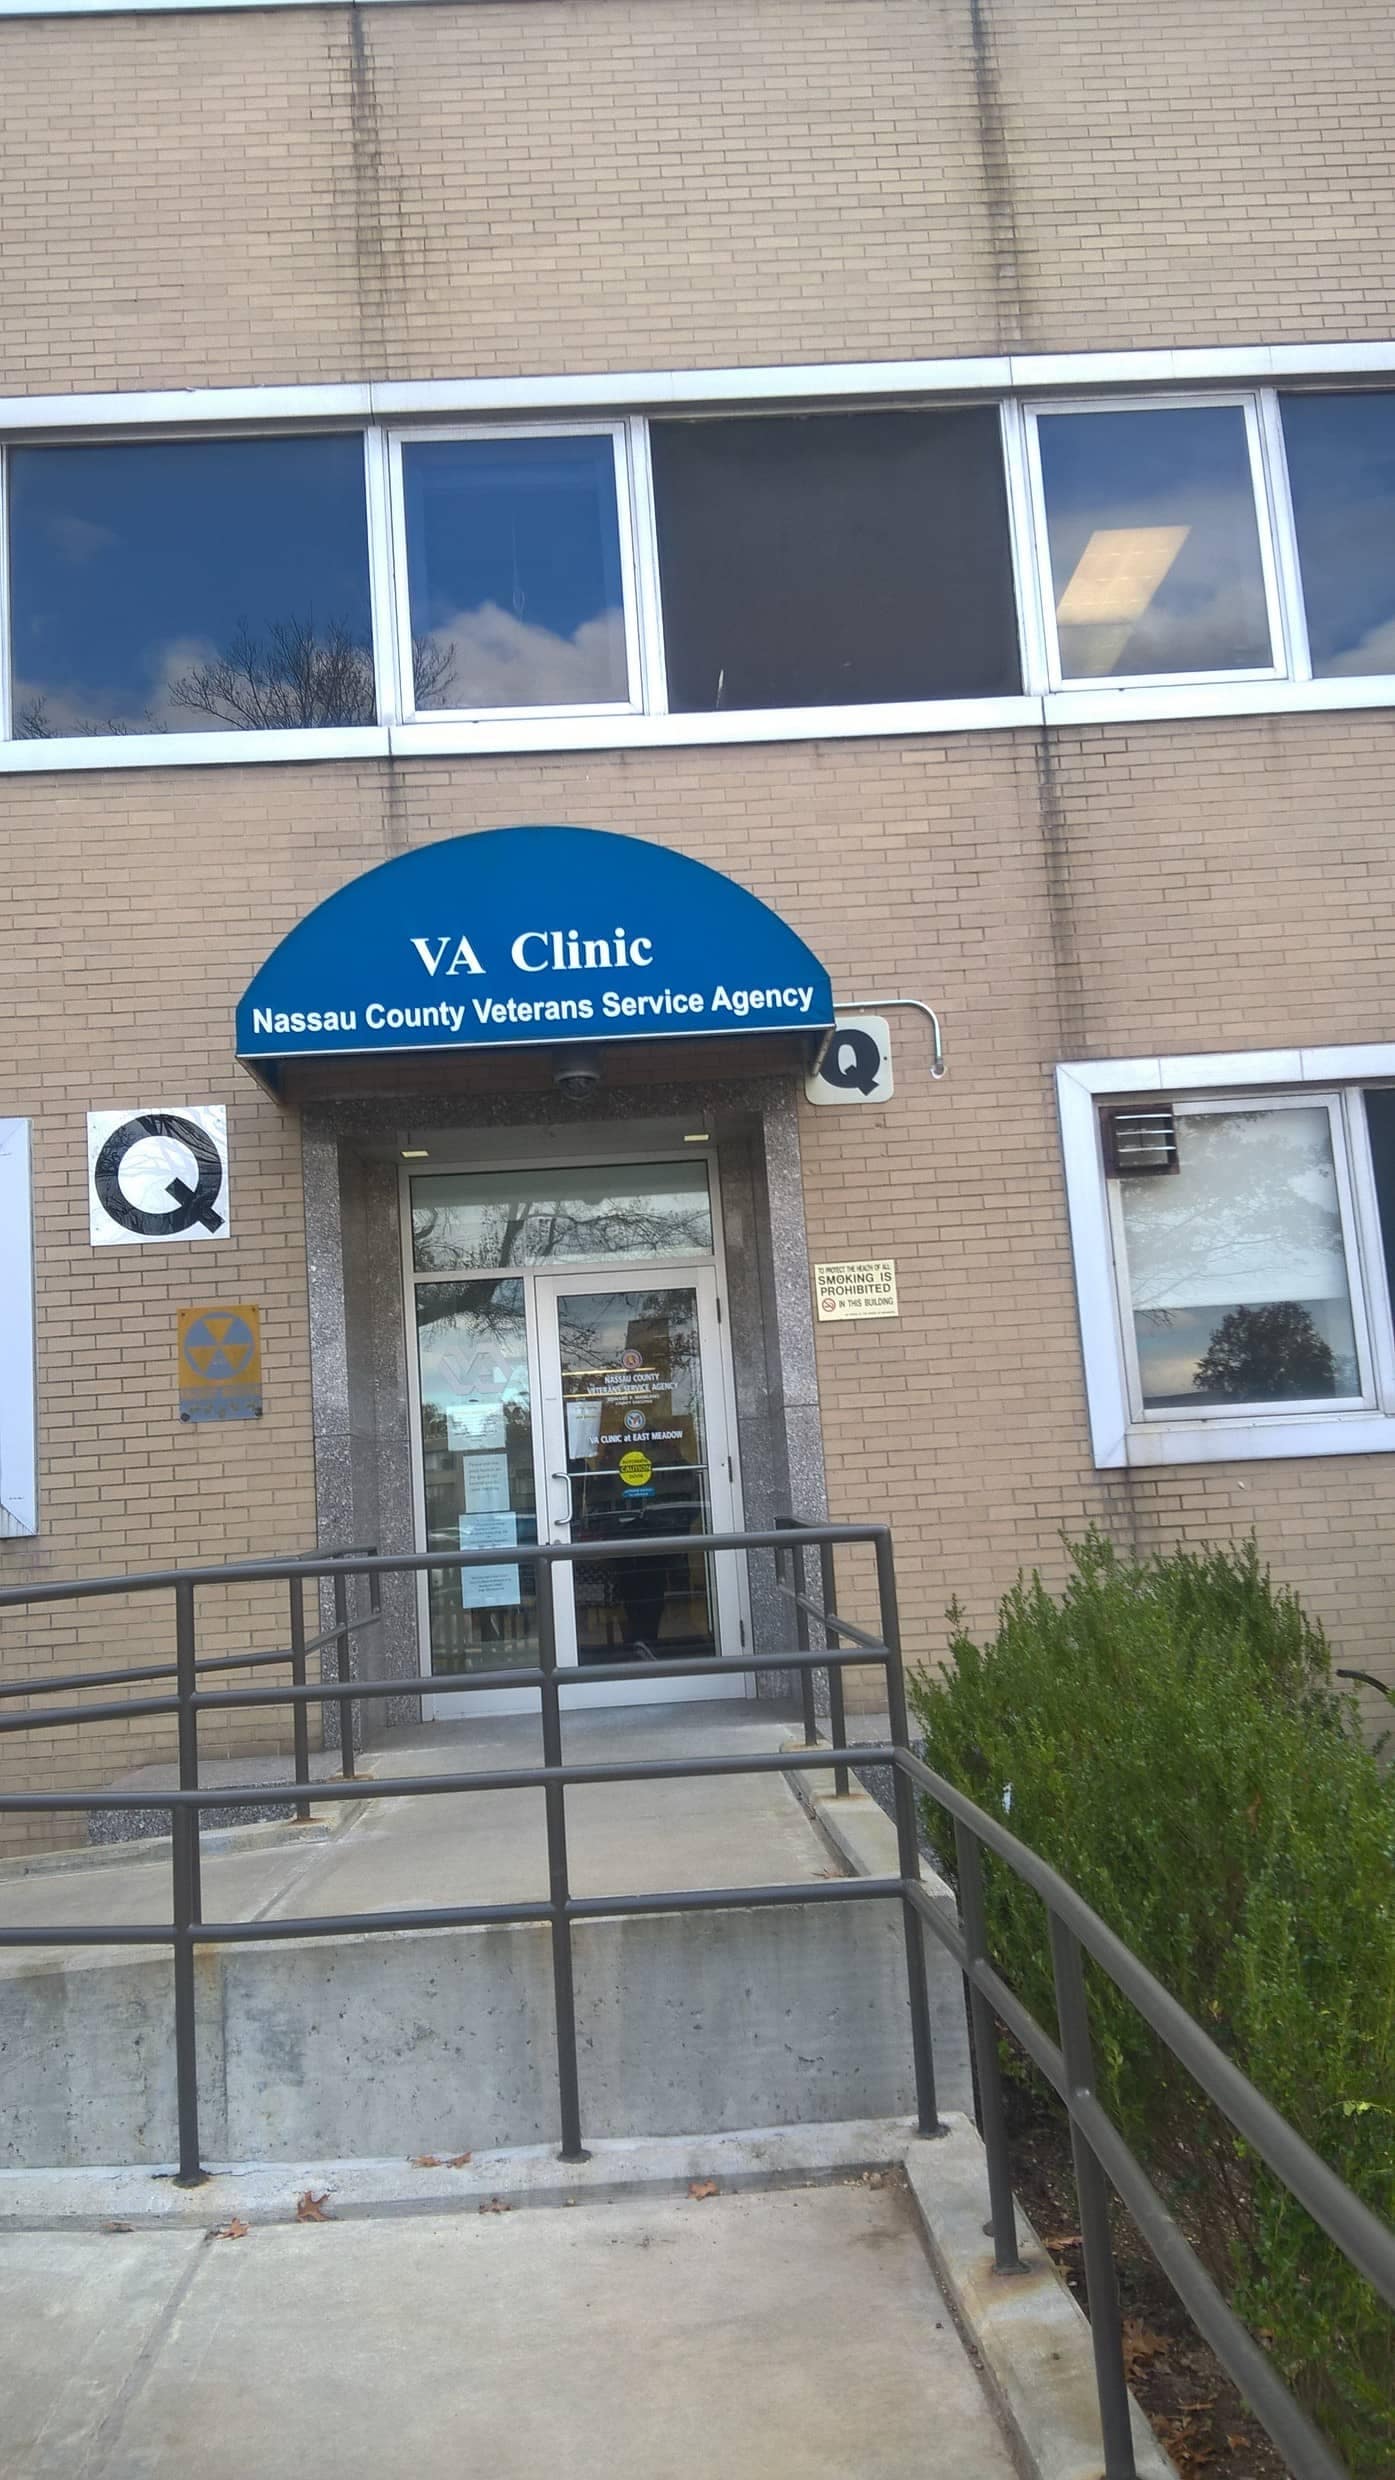 Entrance to VA Clinic